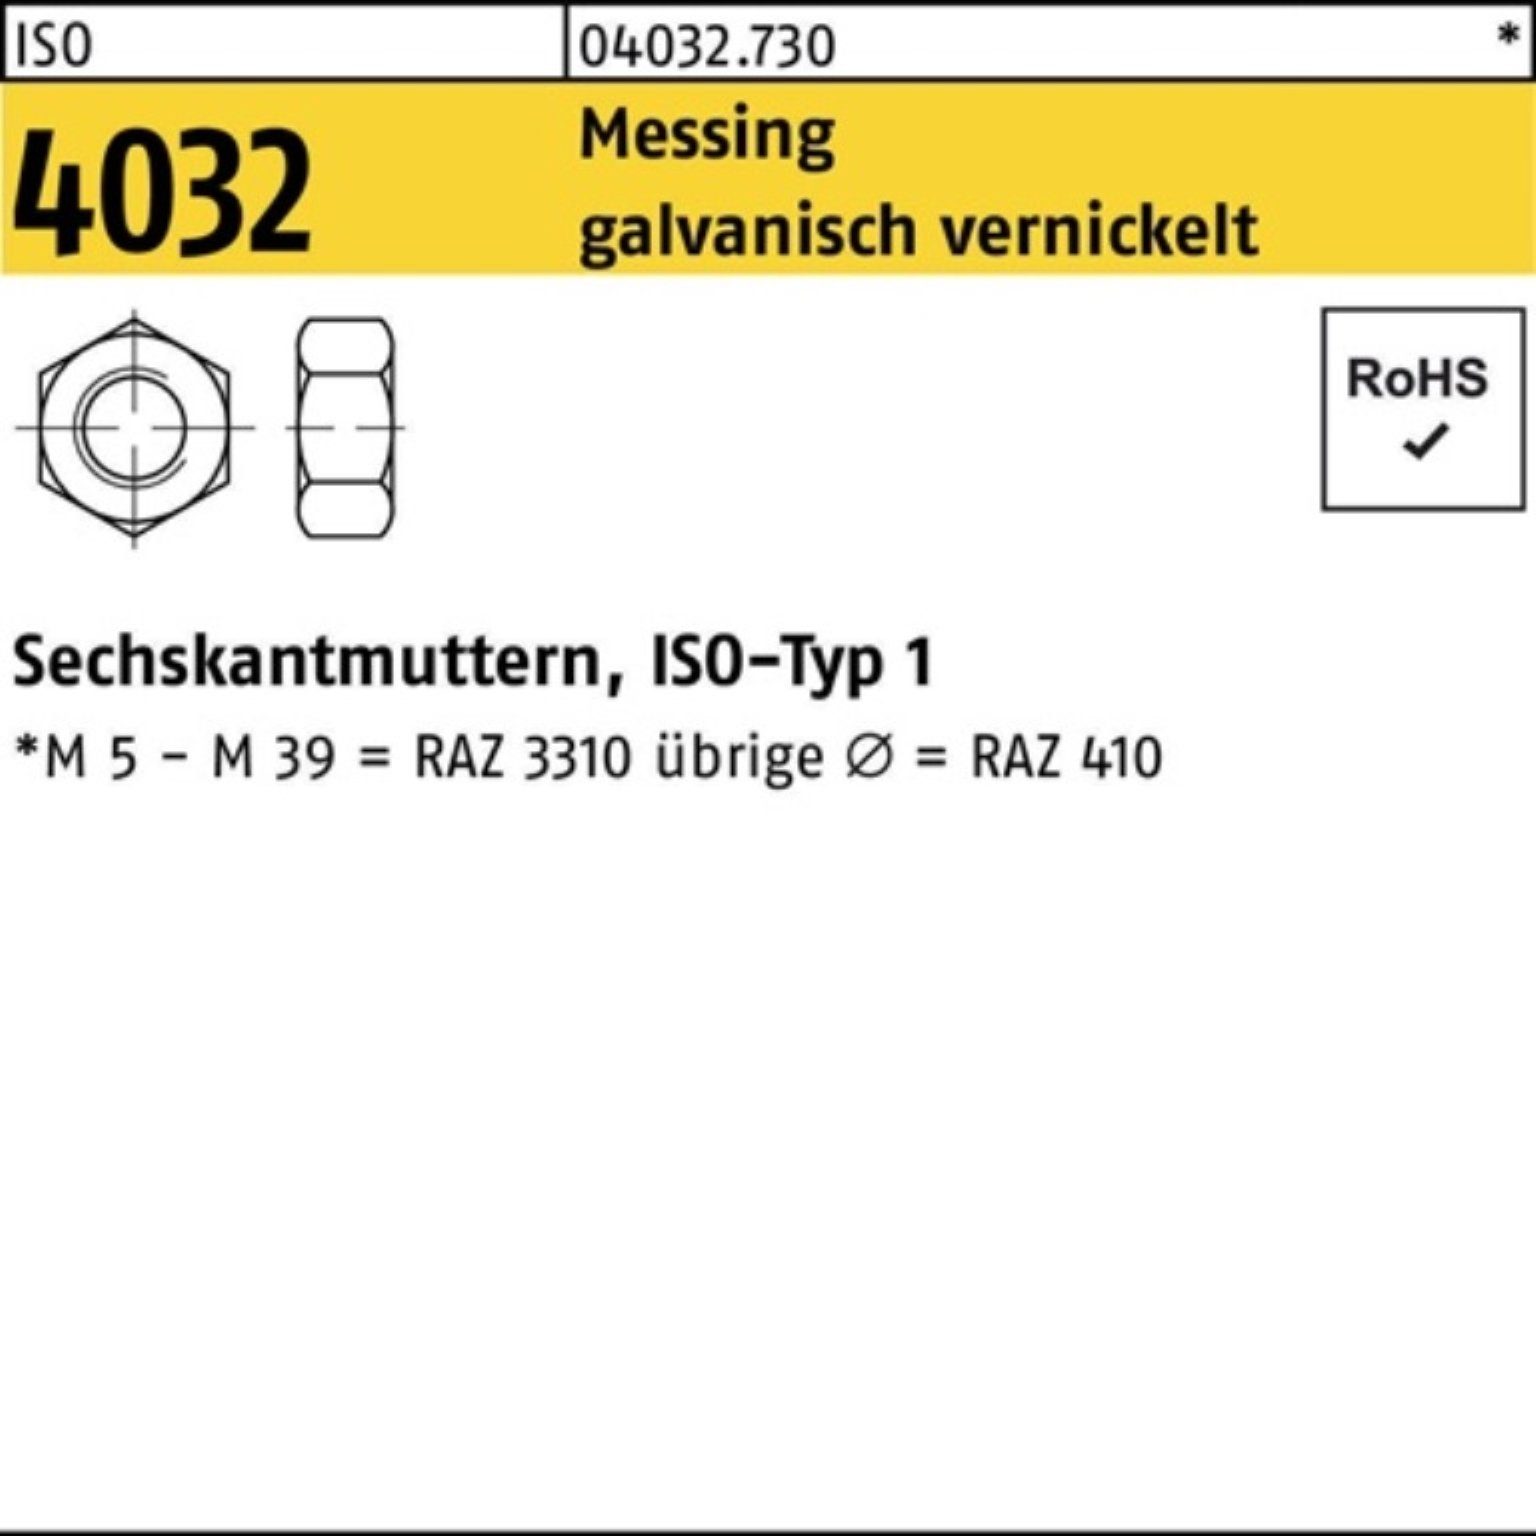 Bufab Muttern 1000er galv. 1000 Messing M5 Pack Sechskantmutter vernickelt 4032 ISO